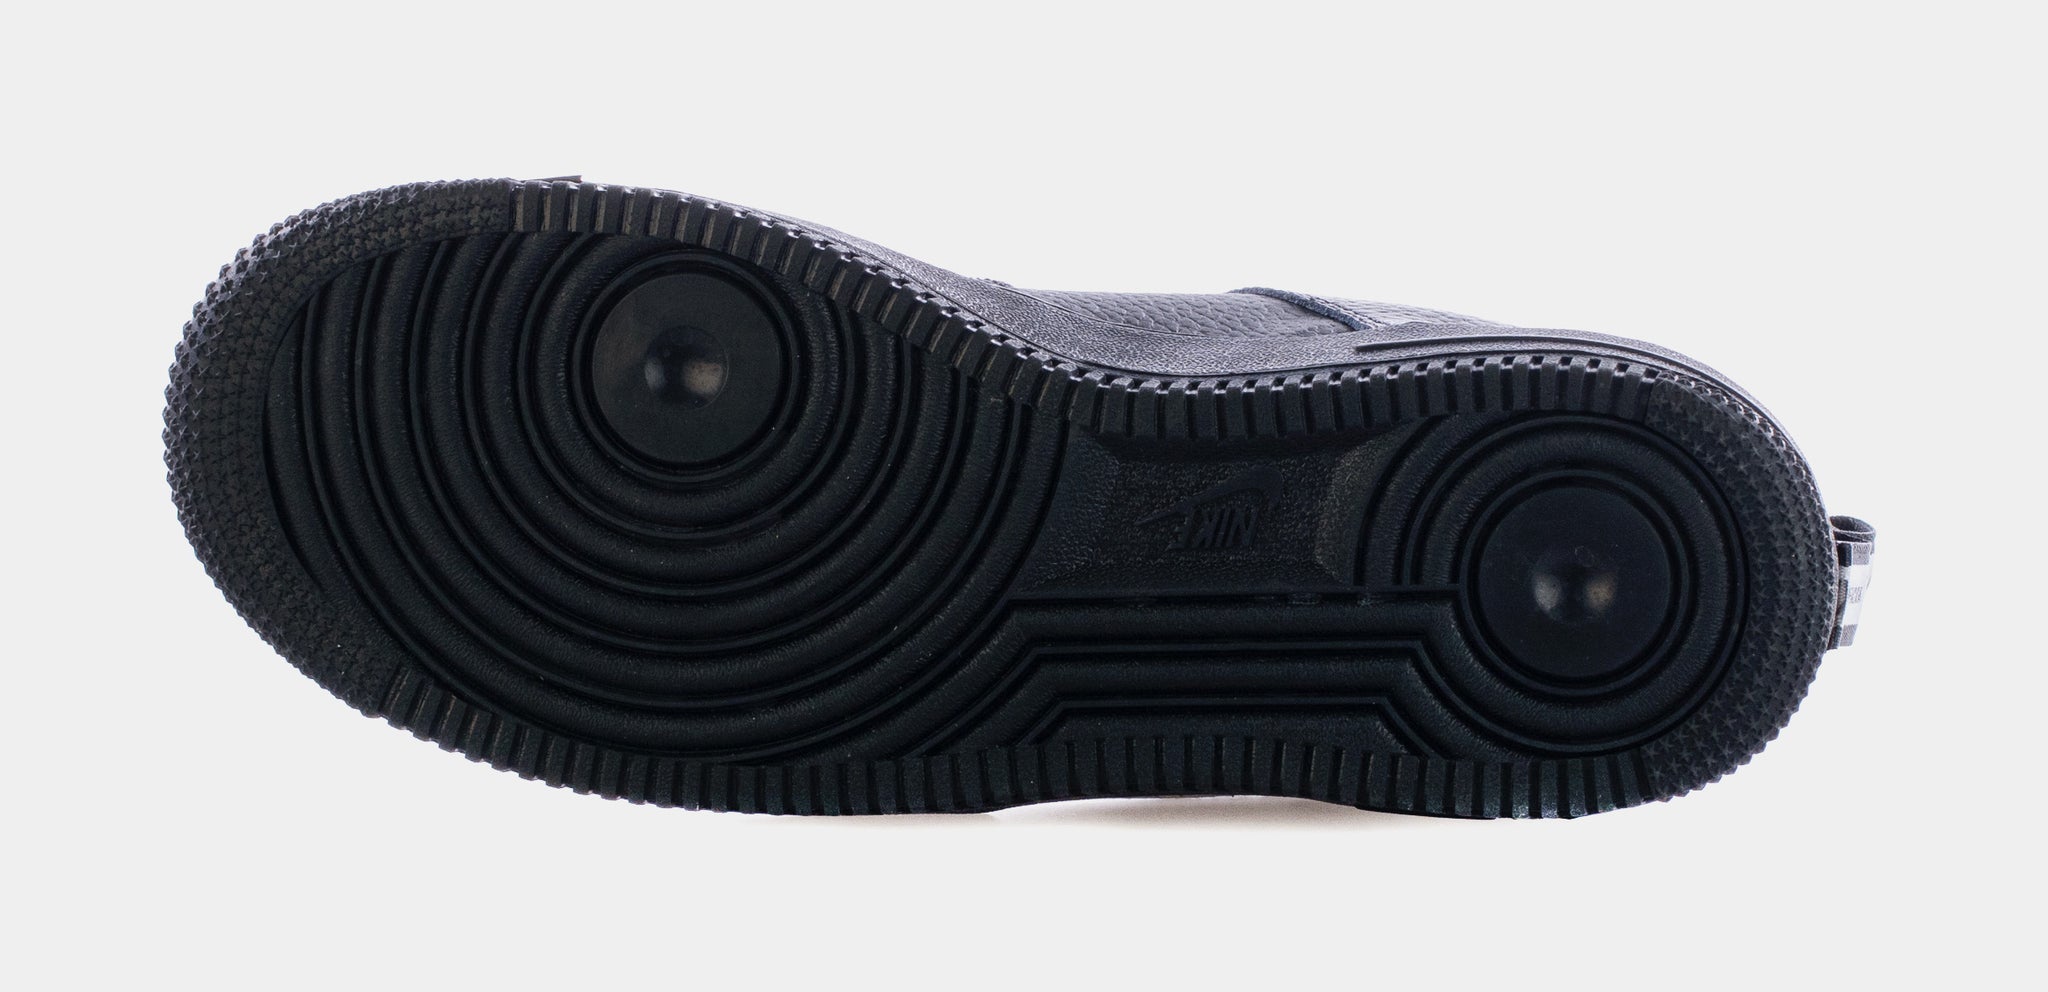 nike air force 1 '07 lv8 utility sneaker - black - low-top sneakers